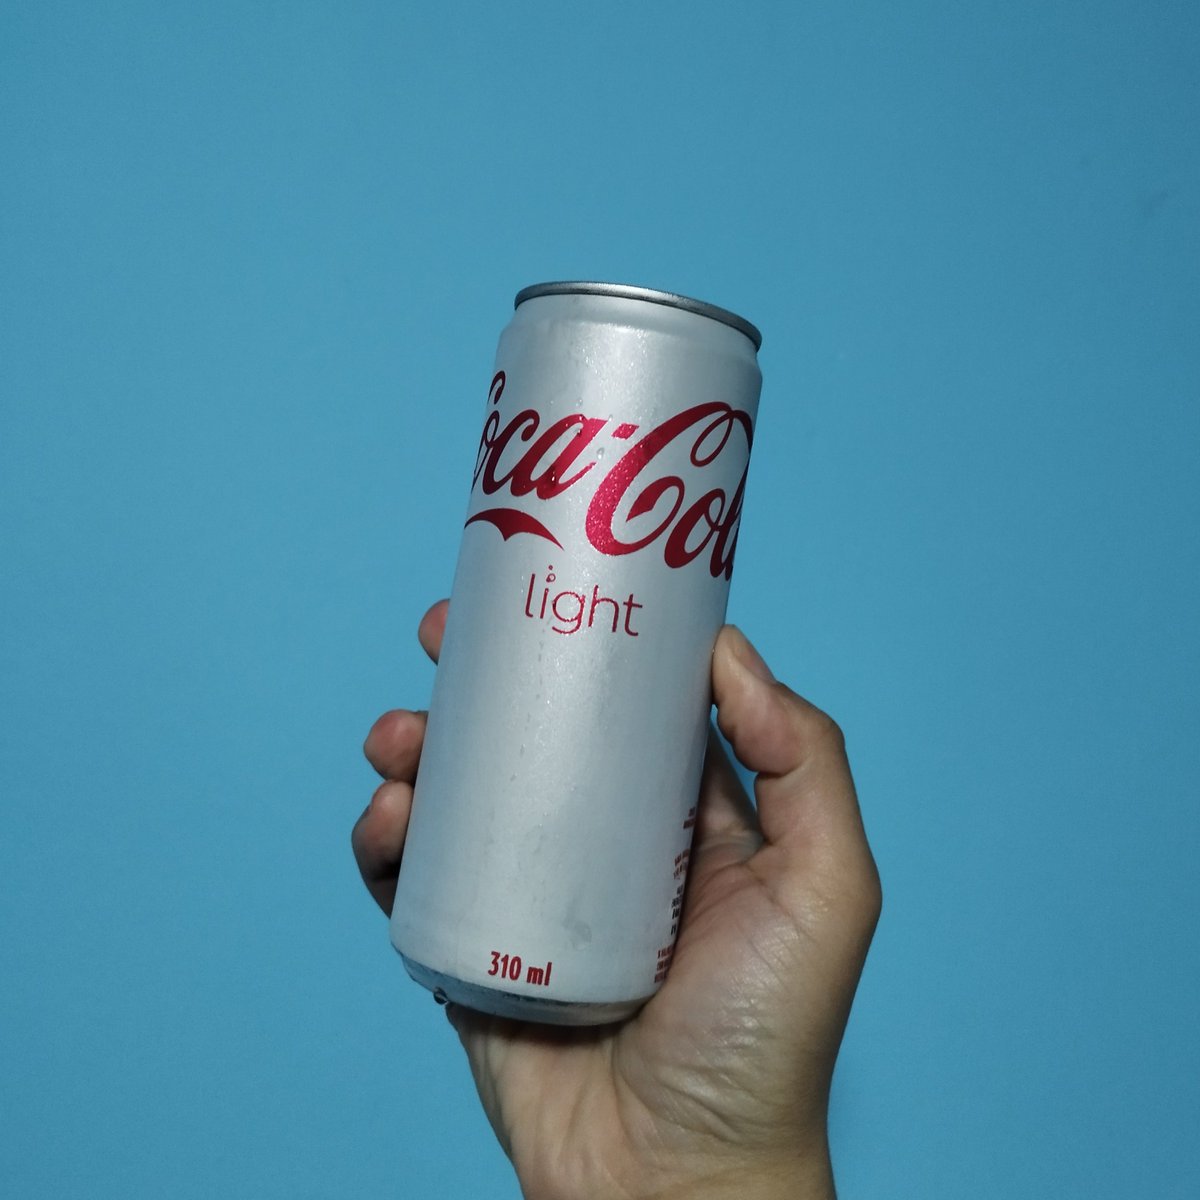 #CocaColaLight

🤤